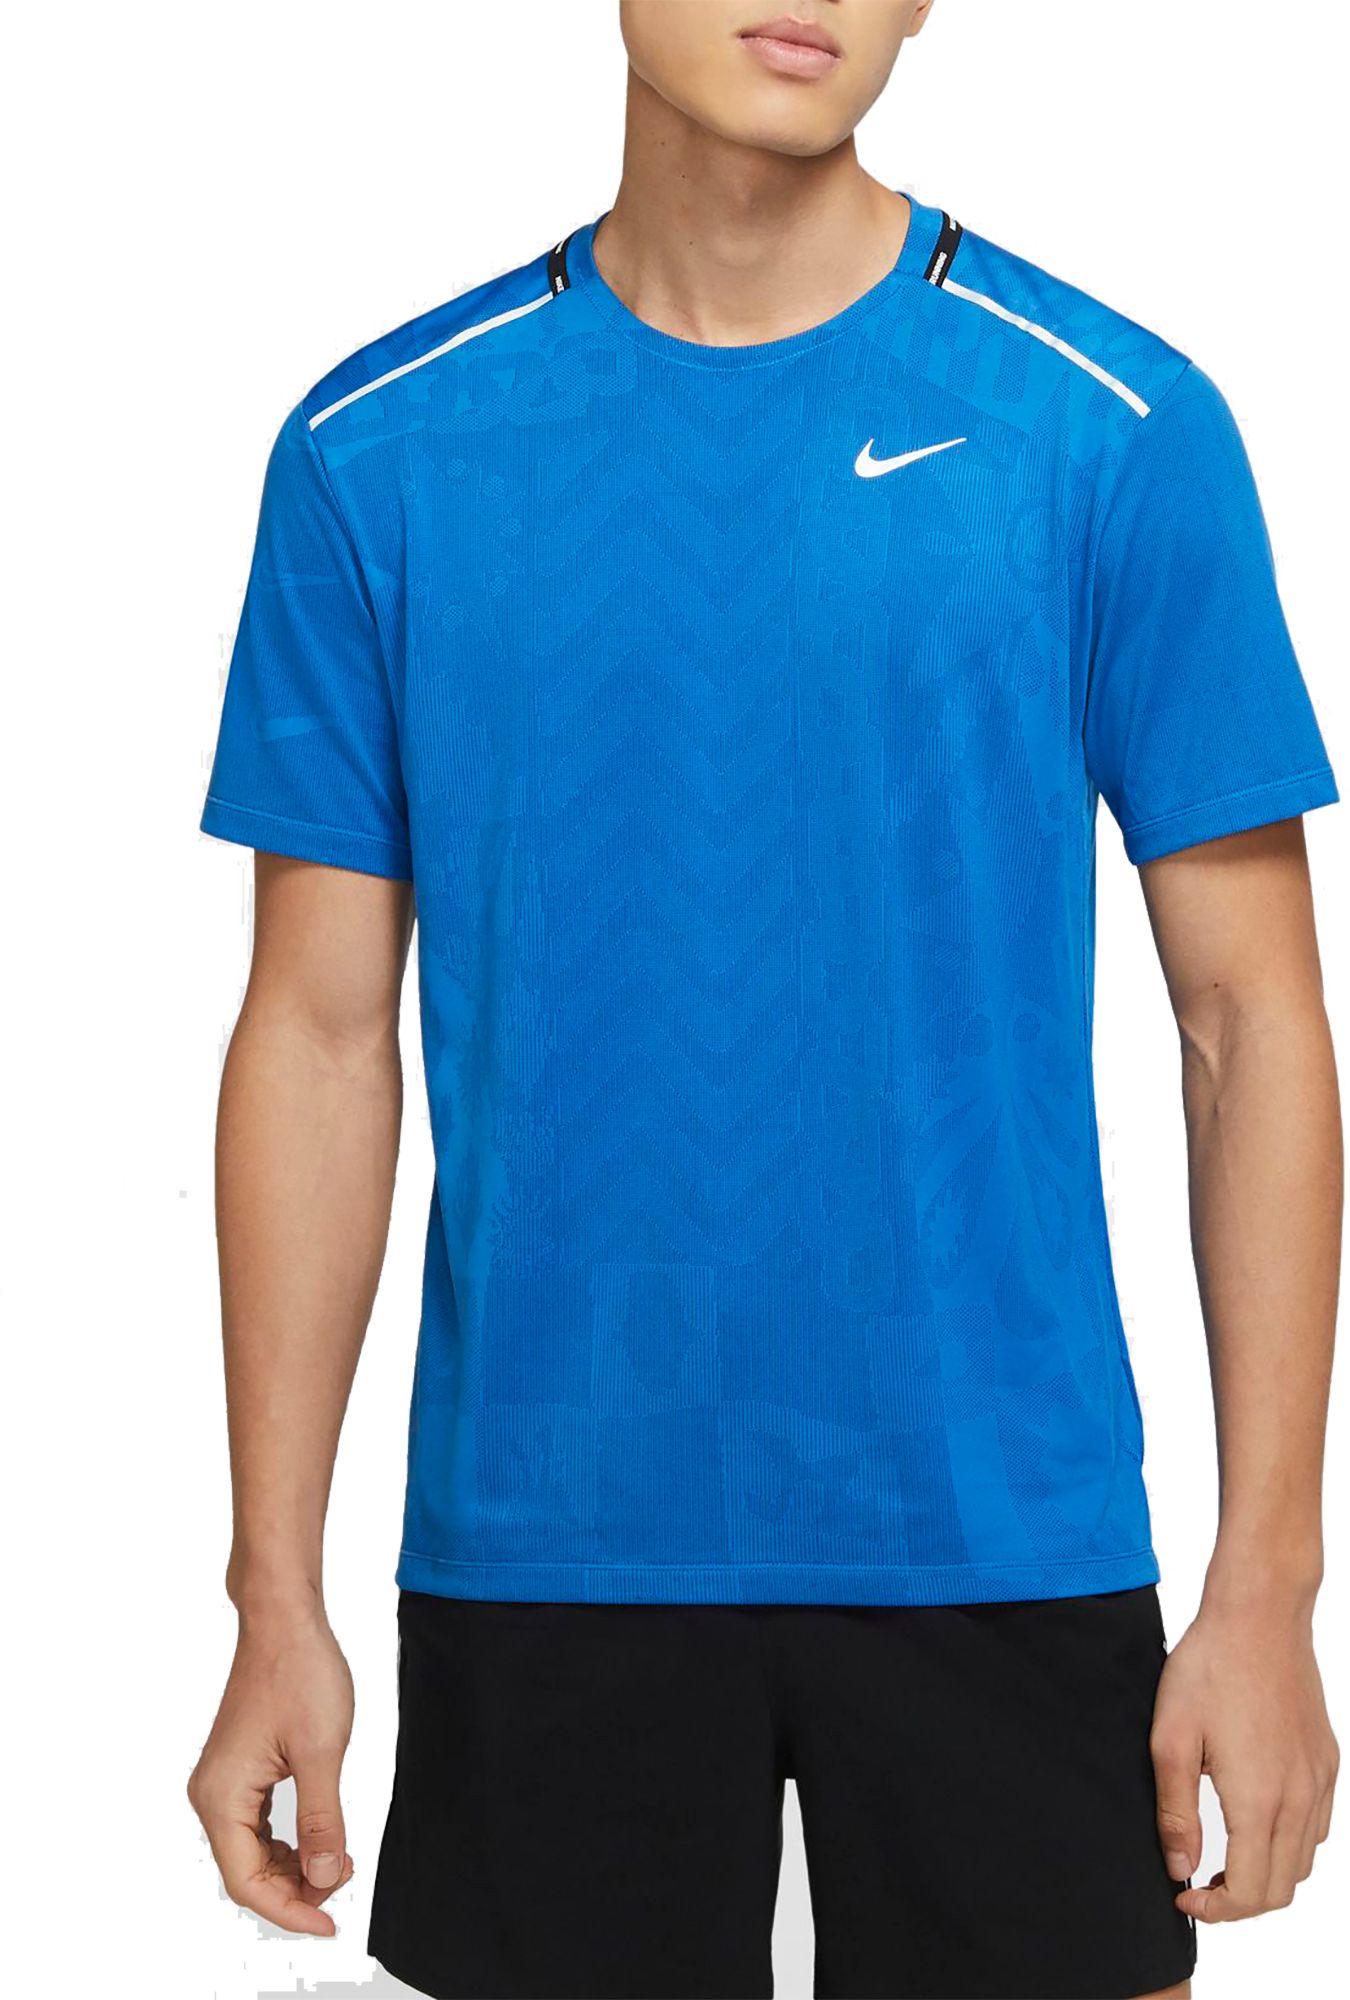 Nike Men's TechKnit Wild Run T-Shirt - .50